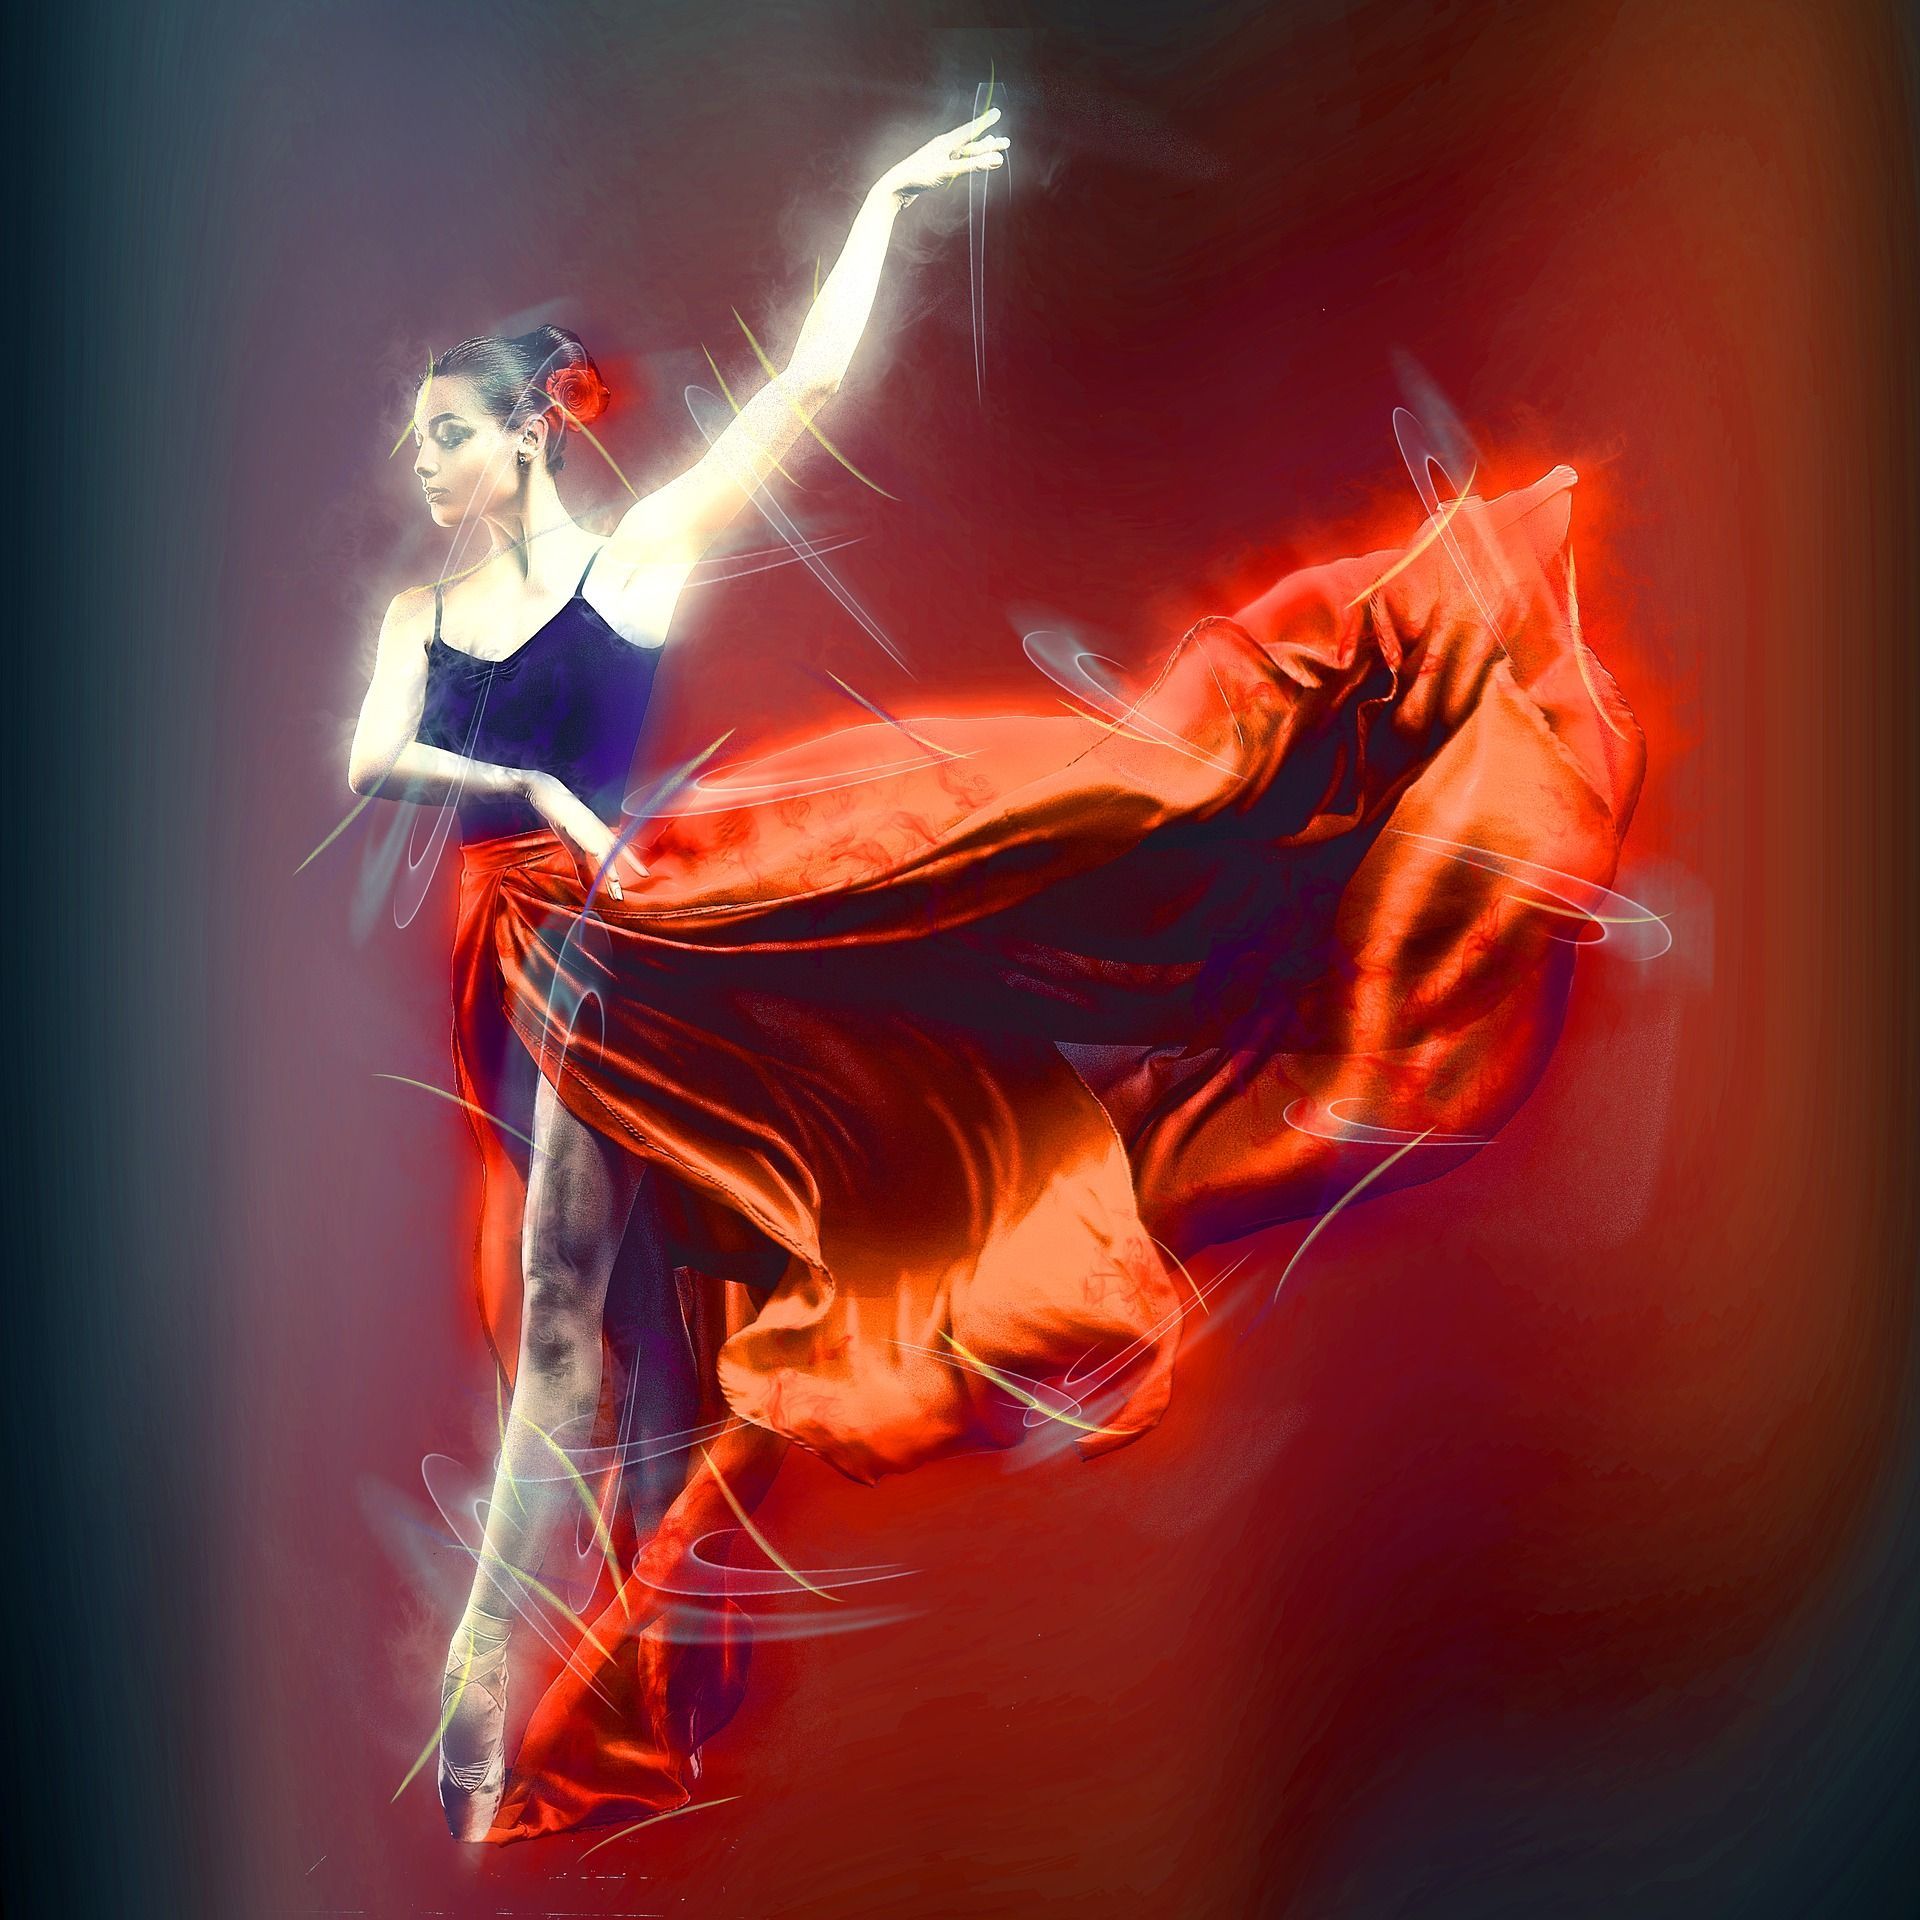 Bailarina vestido rojo Manipulación de fotos # 4584 Fondos de pantalla y